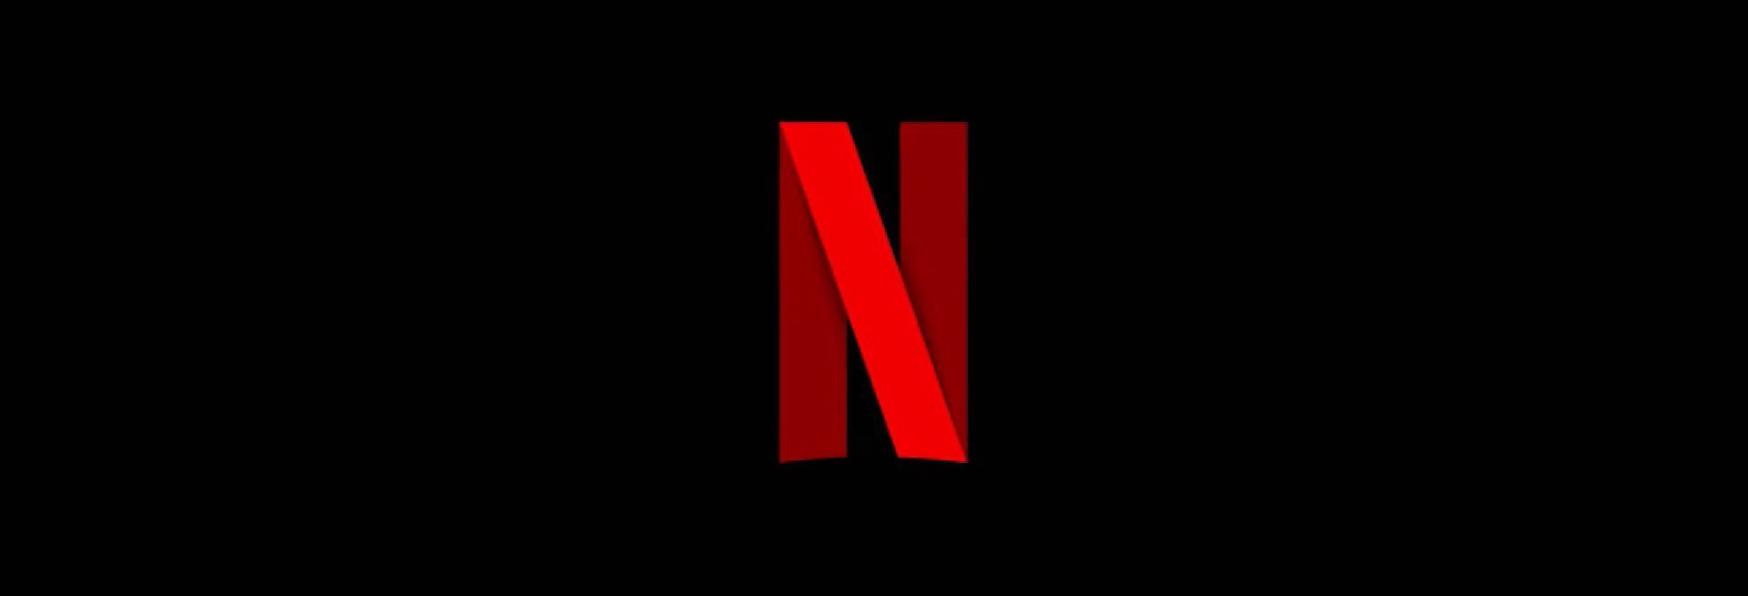 Zero Day: Robert De Niro sarà nel Cast dell'inedita Serie TV in arrivo su Netflix